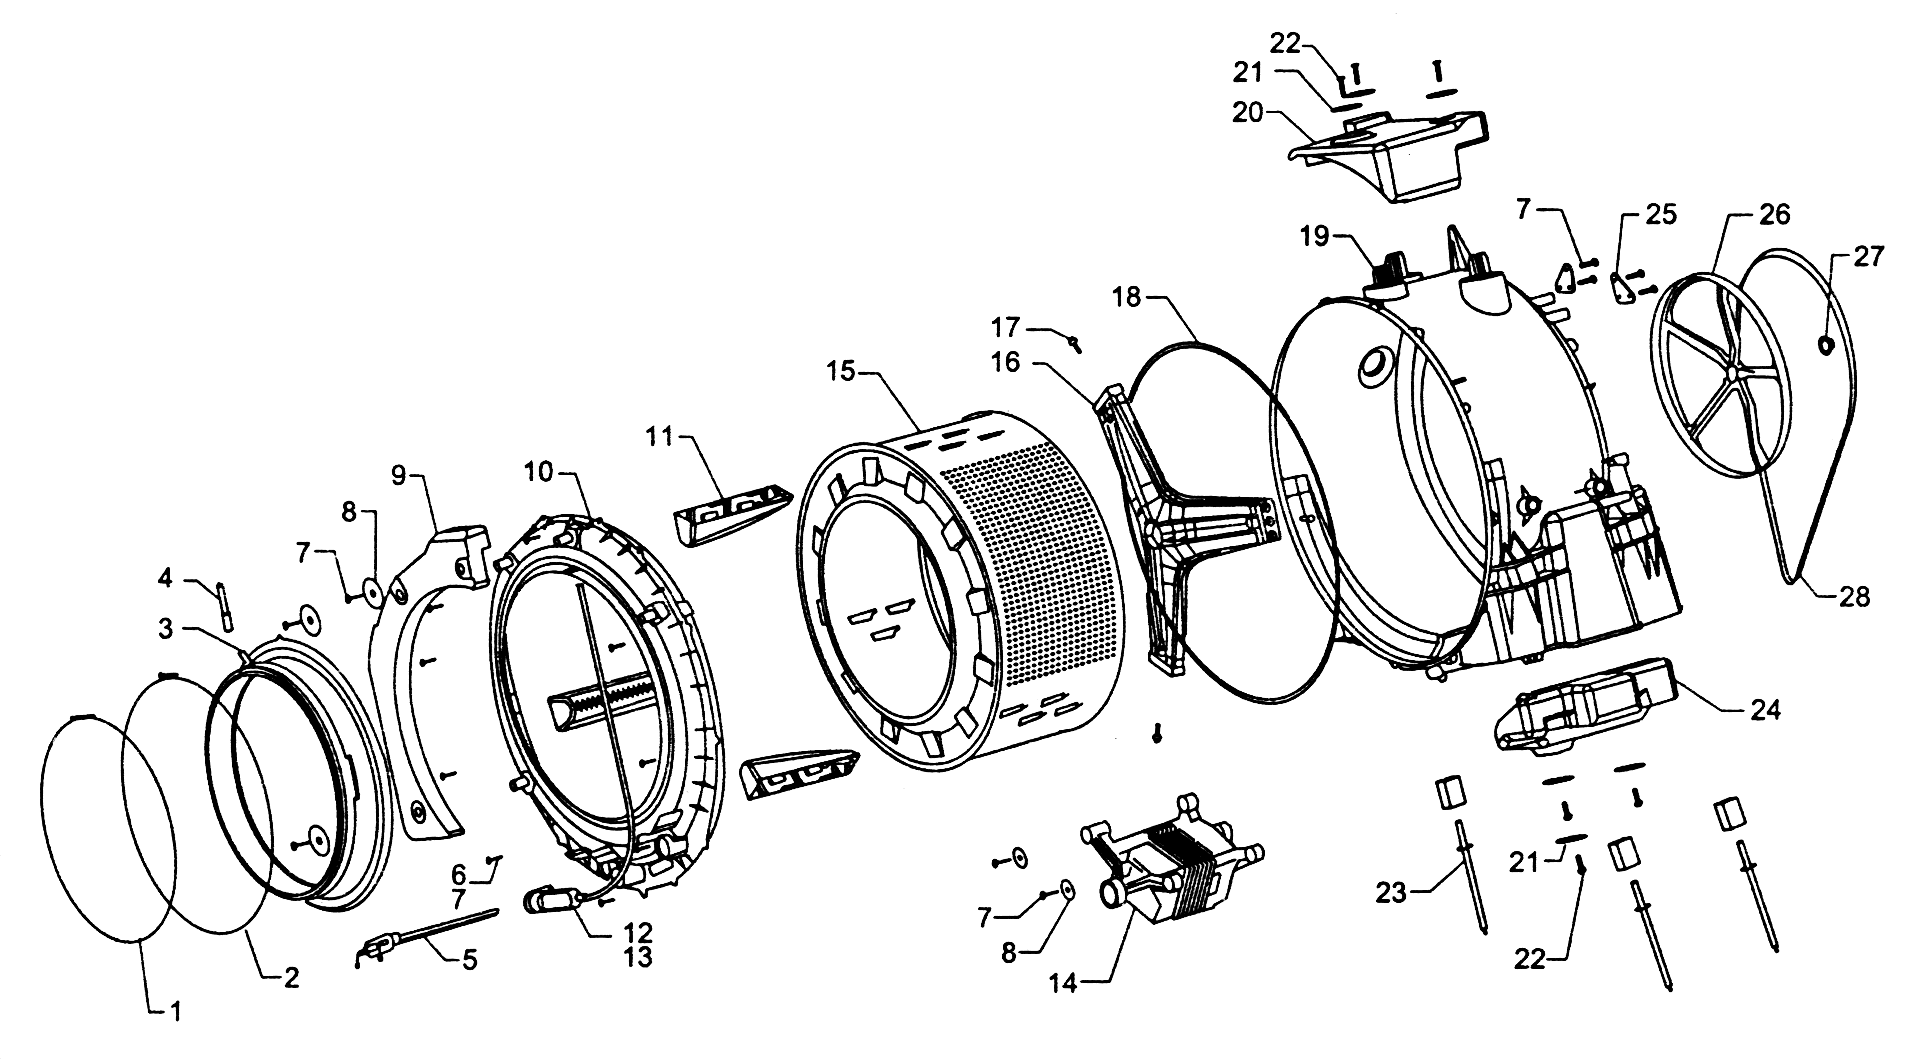 design features of the SM Indesit drum 